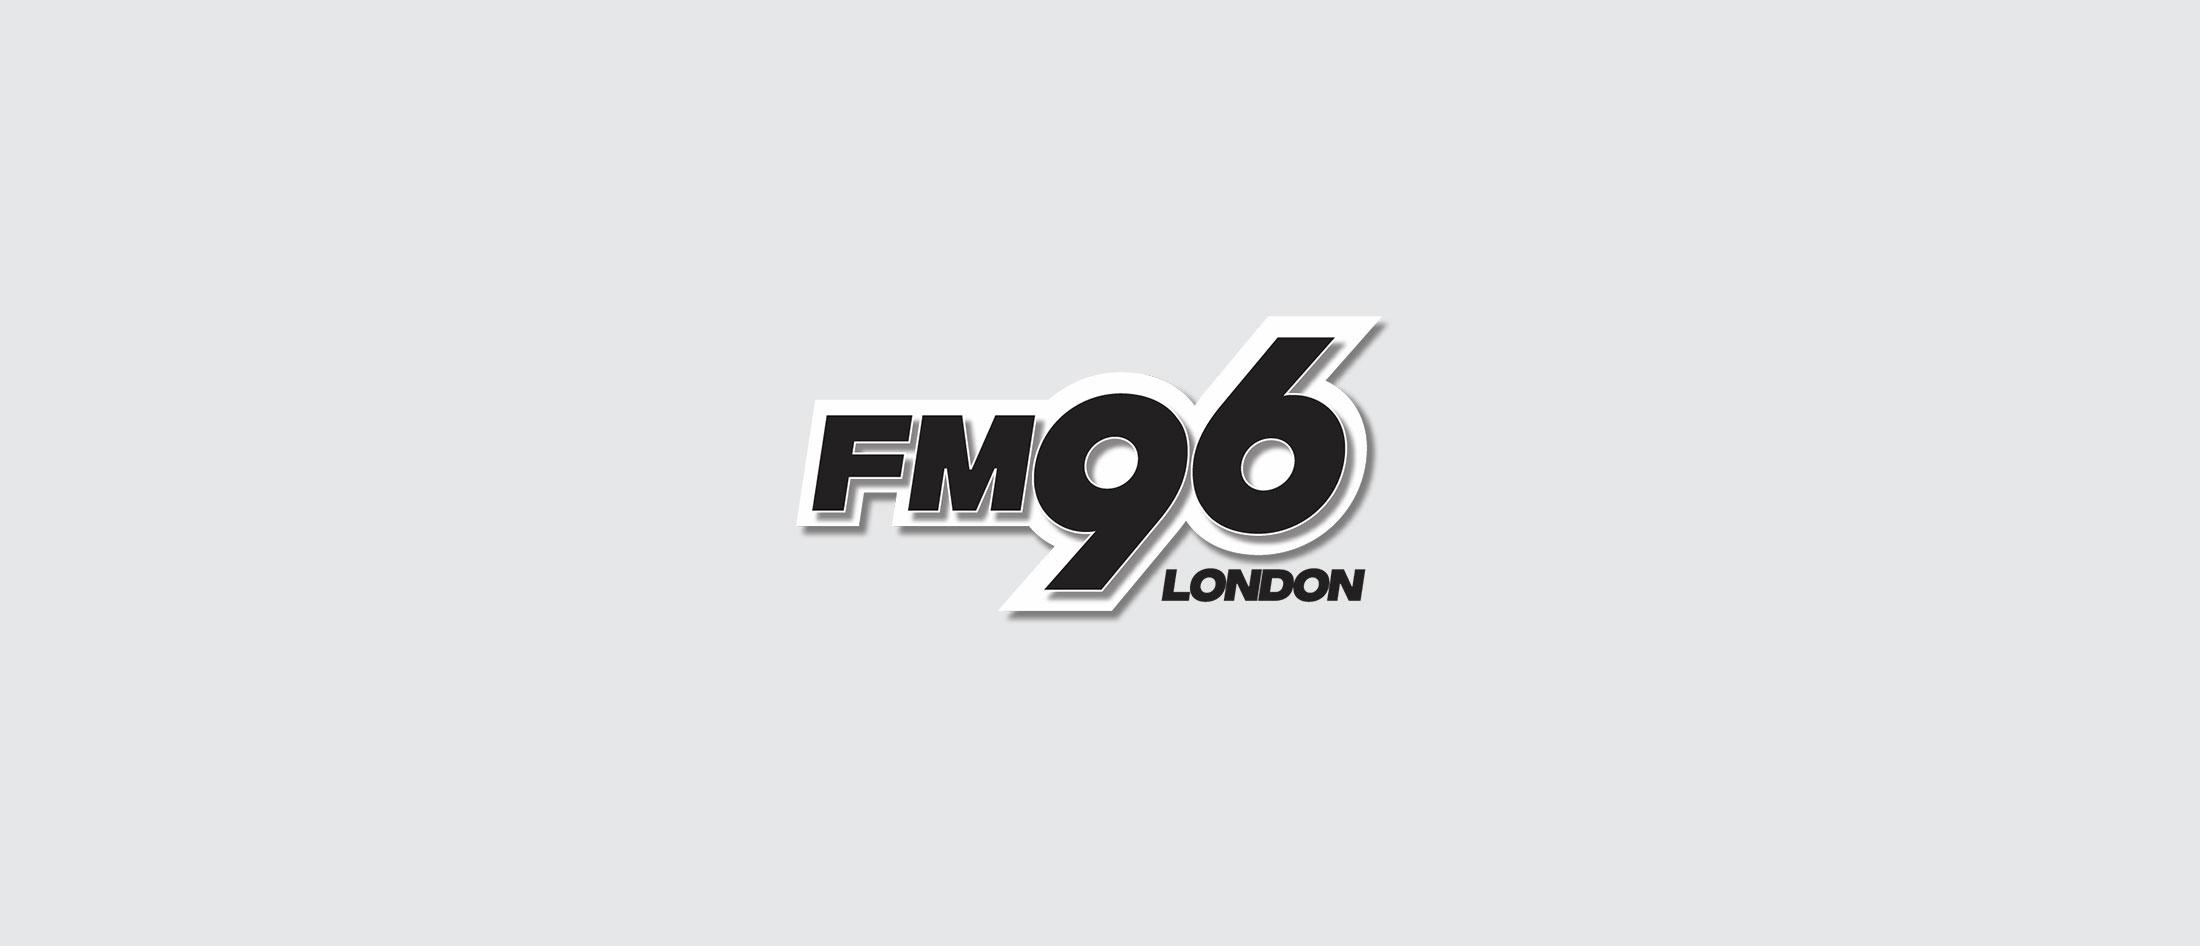 FM96